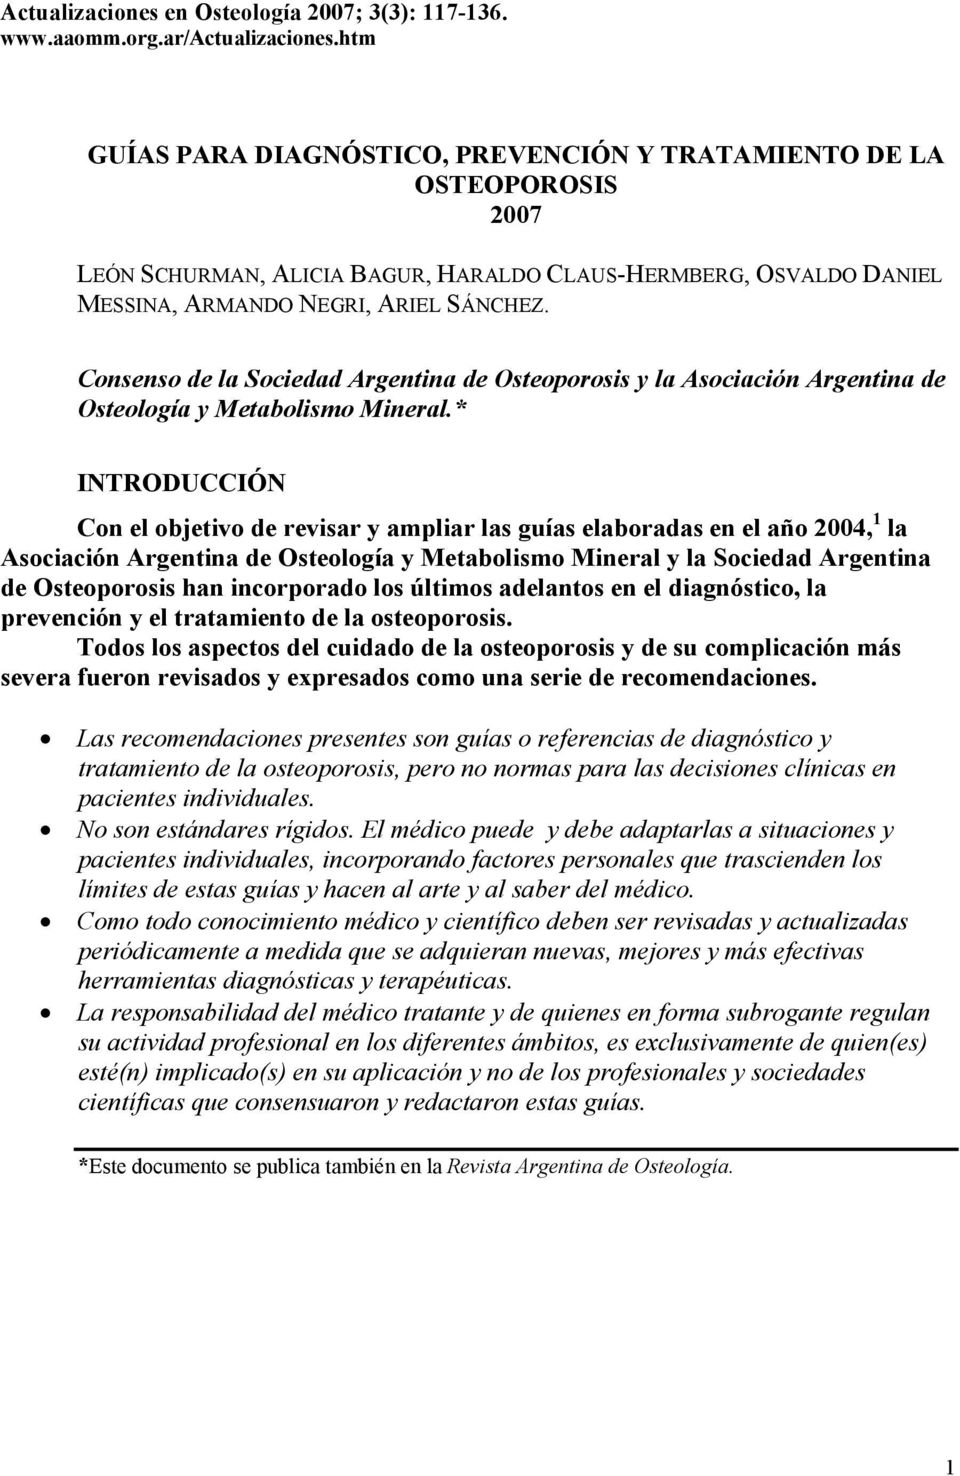 Consenso de la Sociedad Argentina de Osteoporosis y la Asociación Argentina de Osteología y Metabolismo Mineral.